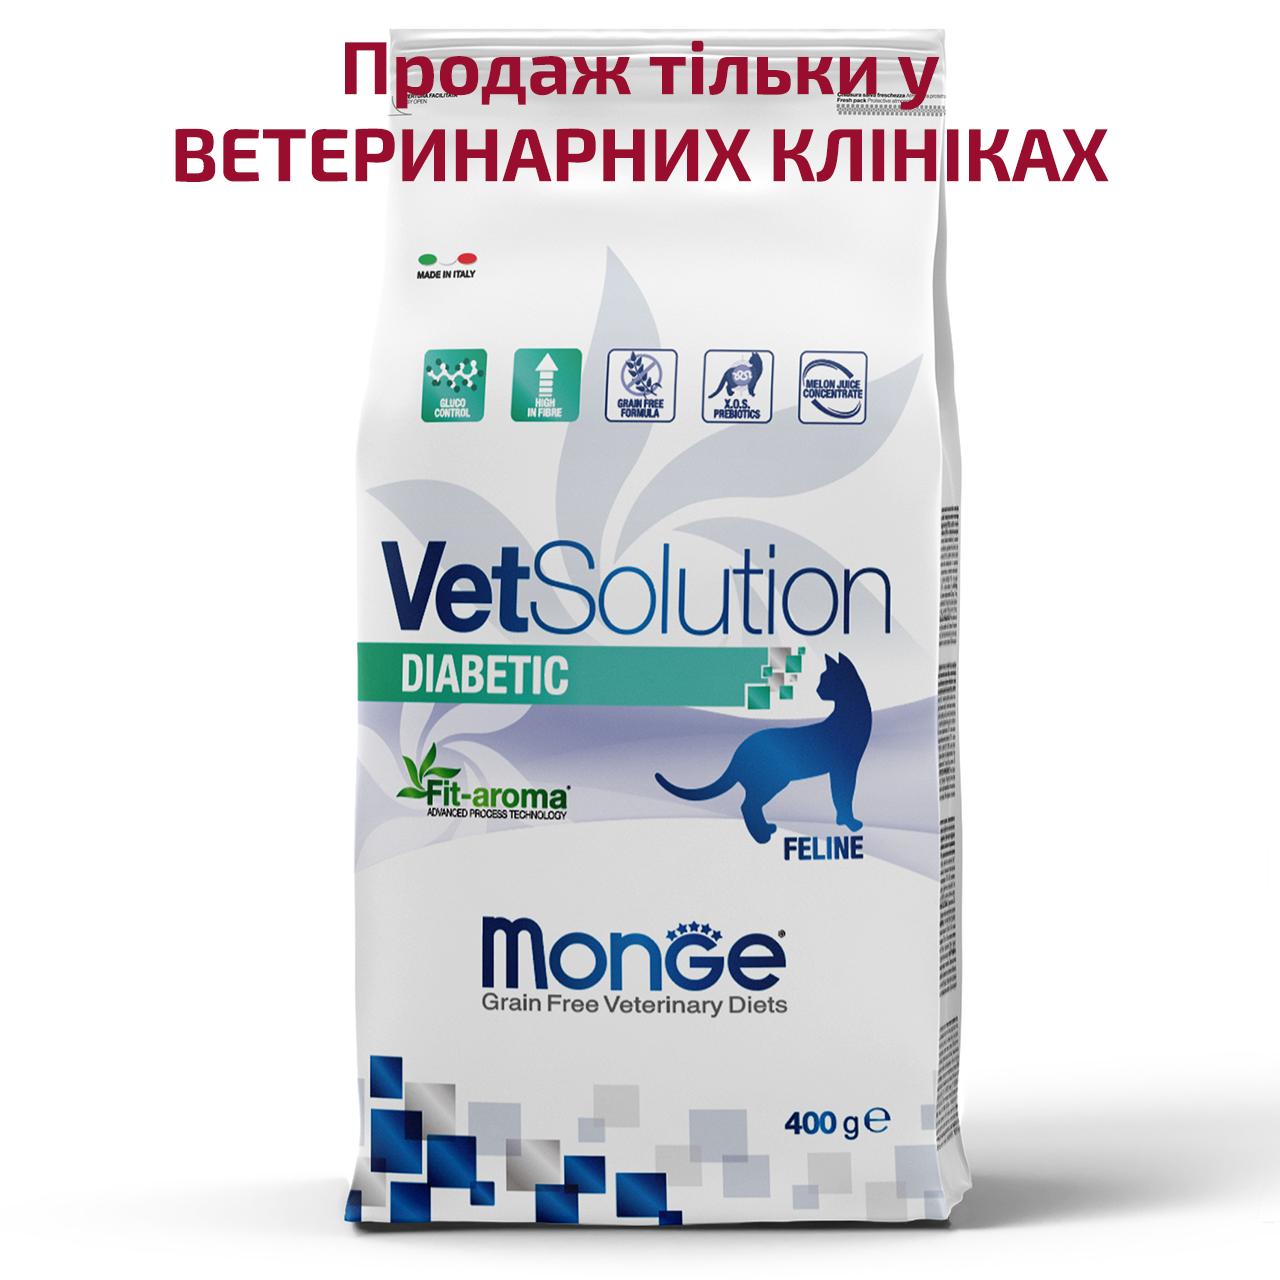 Monge VetSolution Diabetic feline